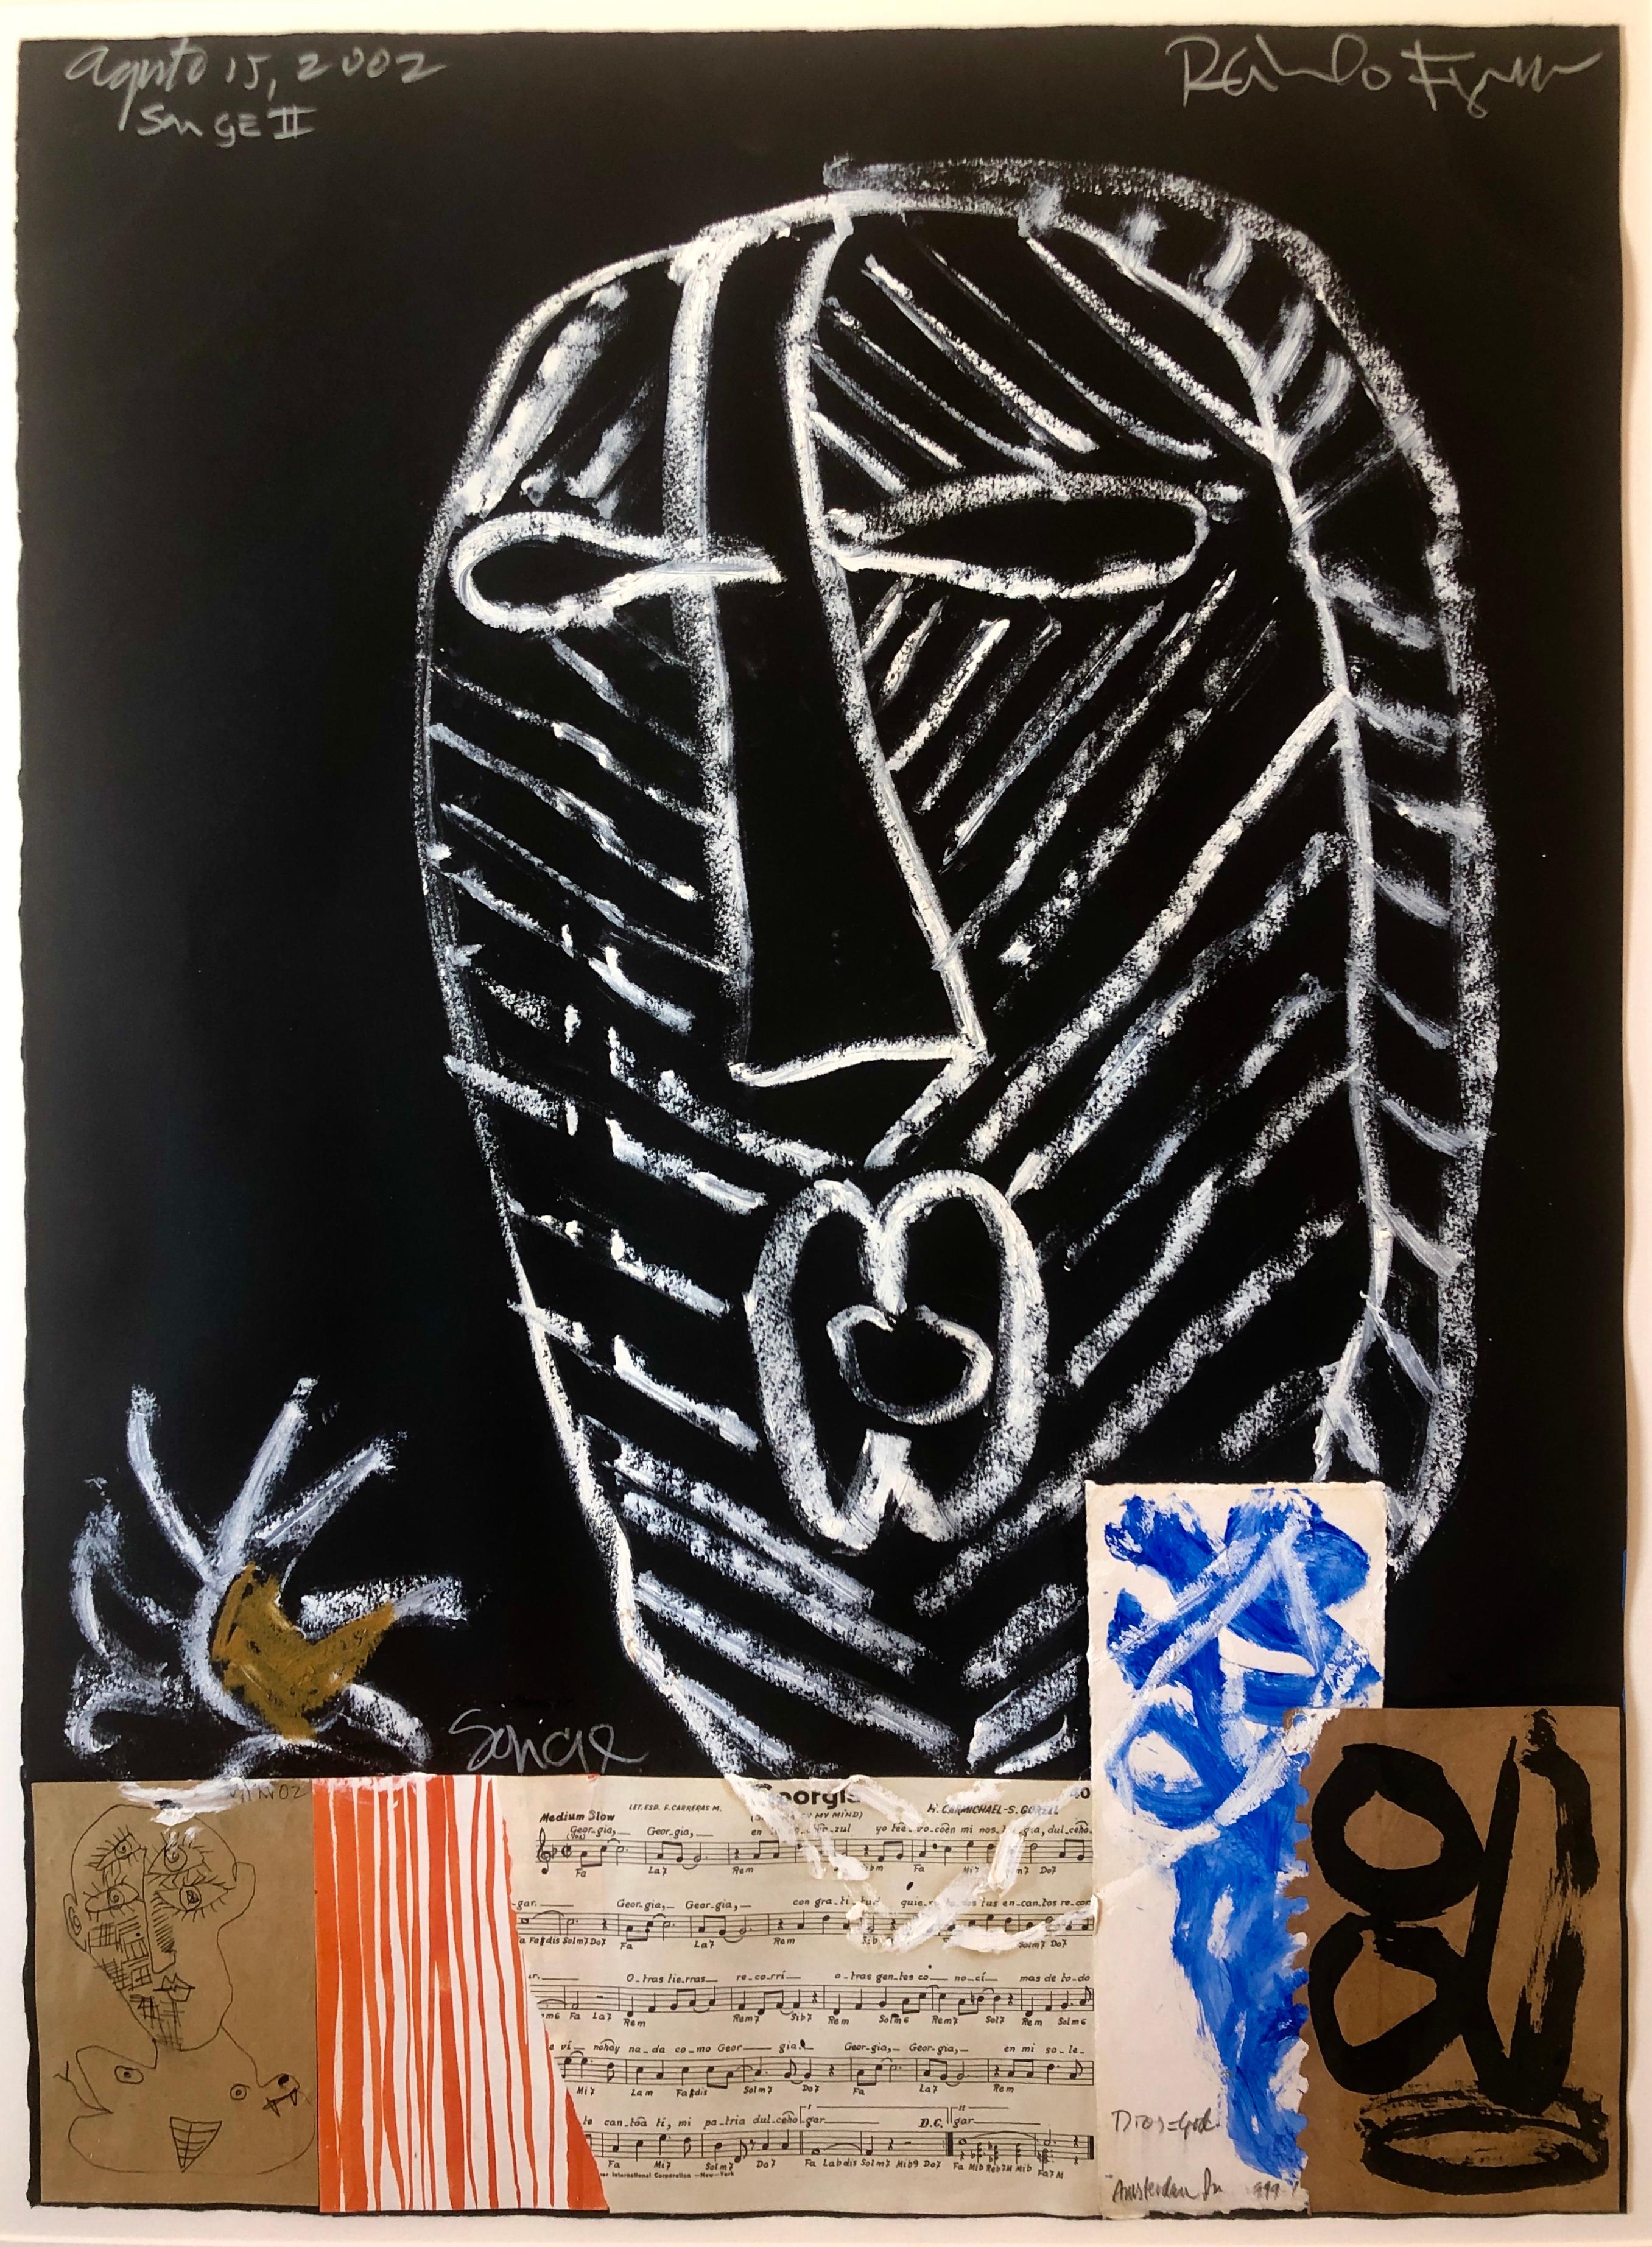 Puerto Ricanischer modernistischer Malermeister Figueroa in Mischtechnik, Collage mit Musiknotizen (Postmoderne), Painting, von Raimundo Figueroa